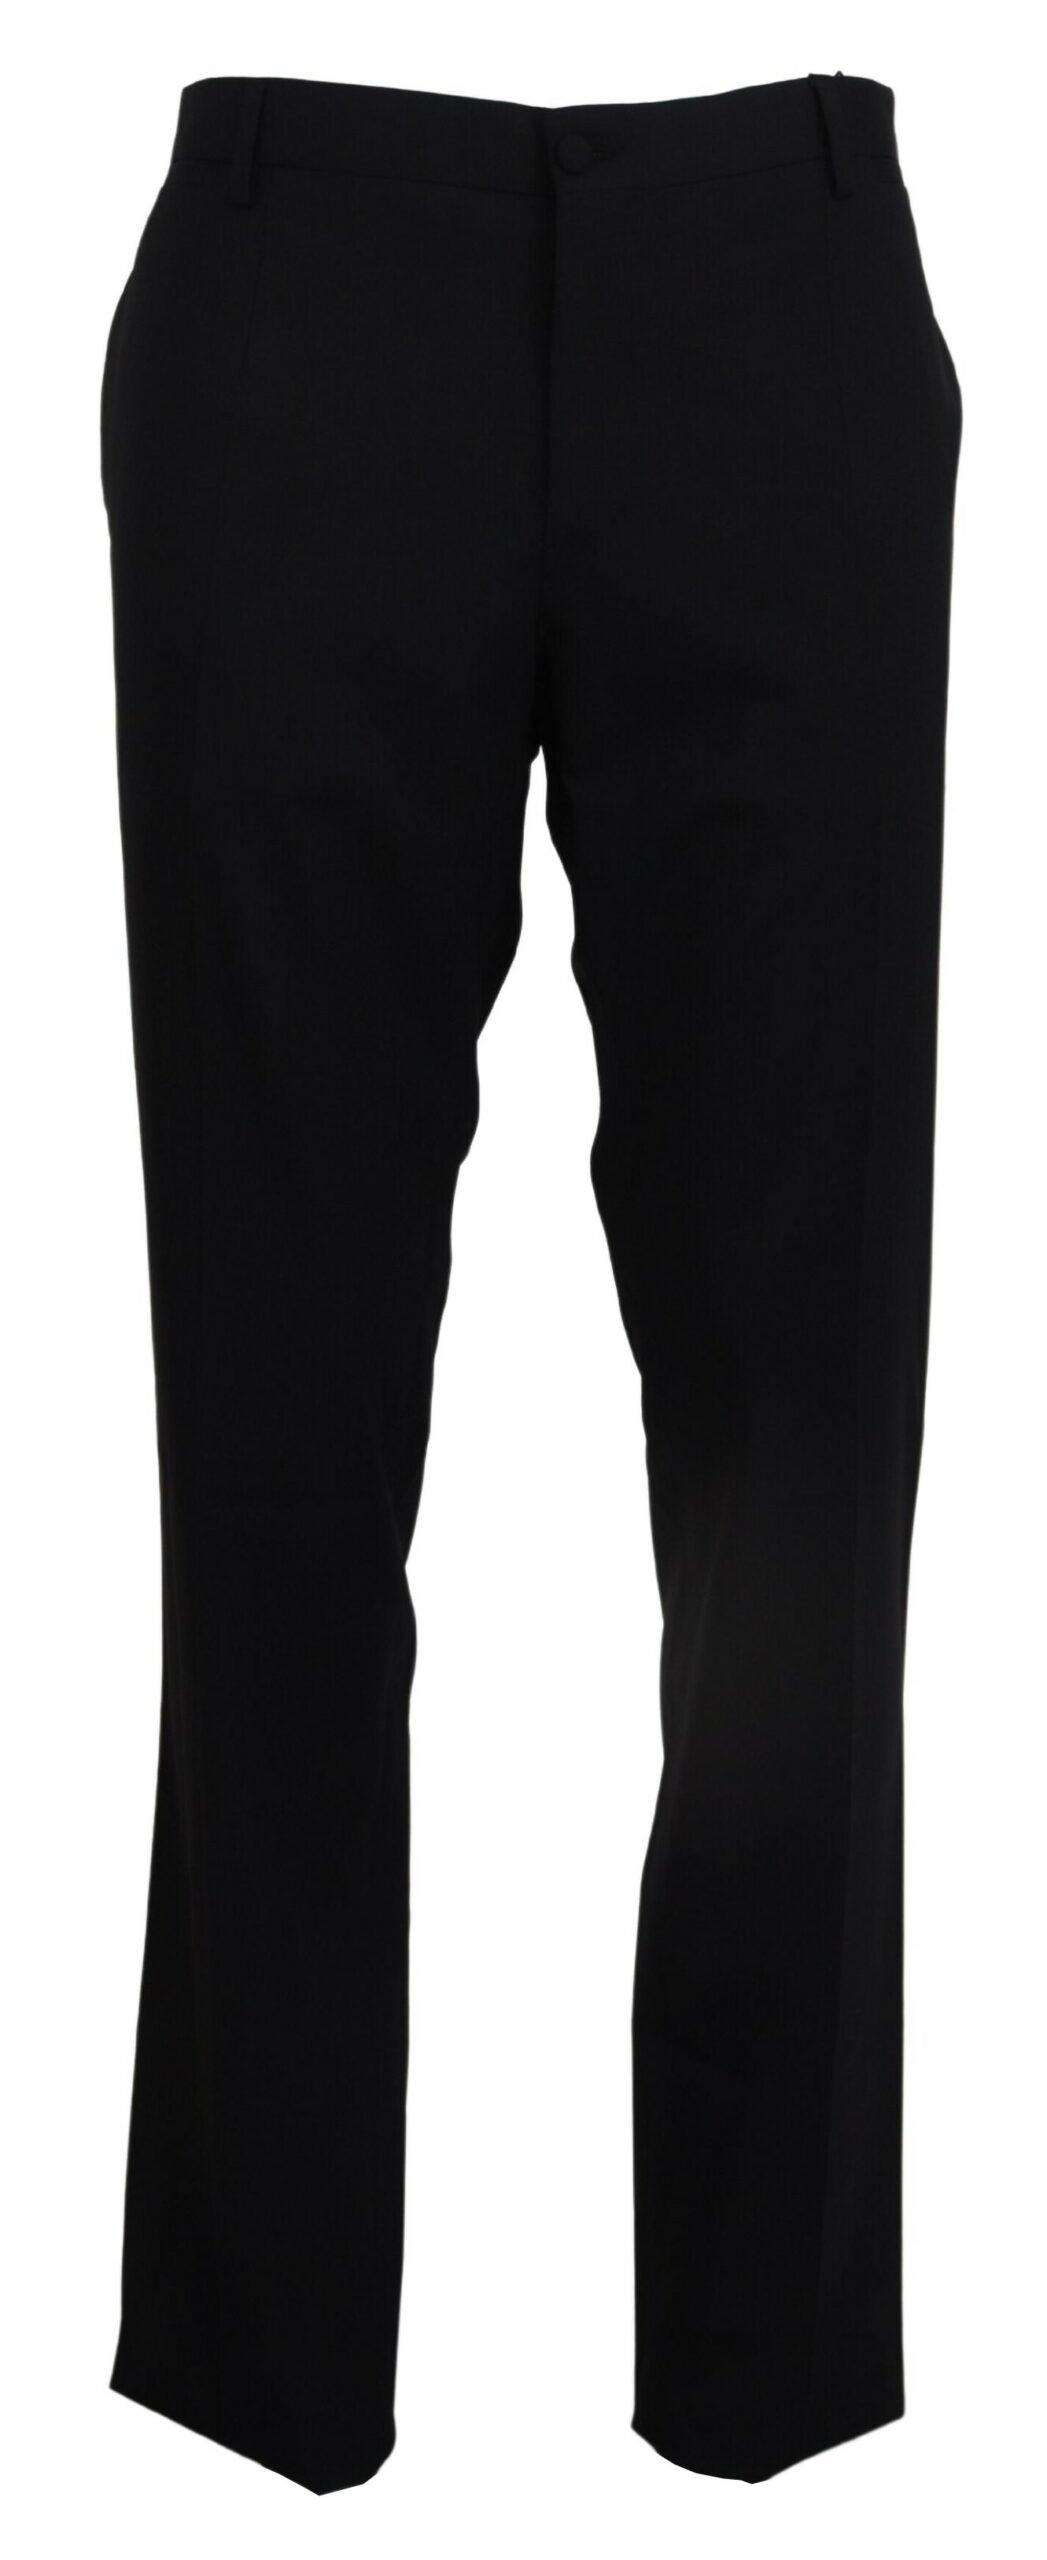 Stretch Suit Trousers For Men Office Pants Non-ironing Slim Fit Bridegroom  Suits Wedding Business Black Suit Pants Men - Suit Pants - AliExpress